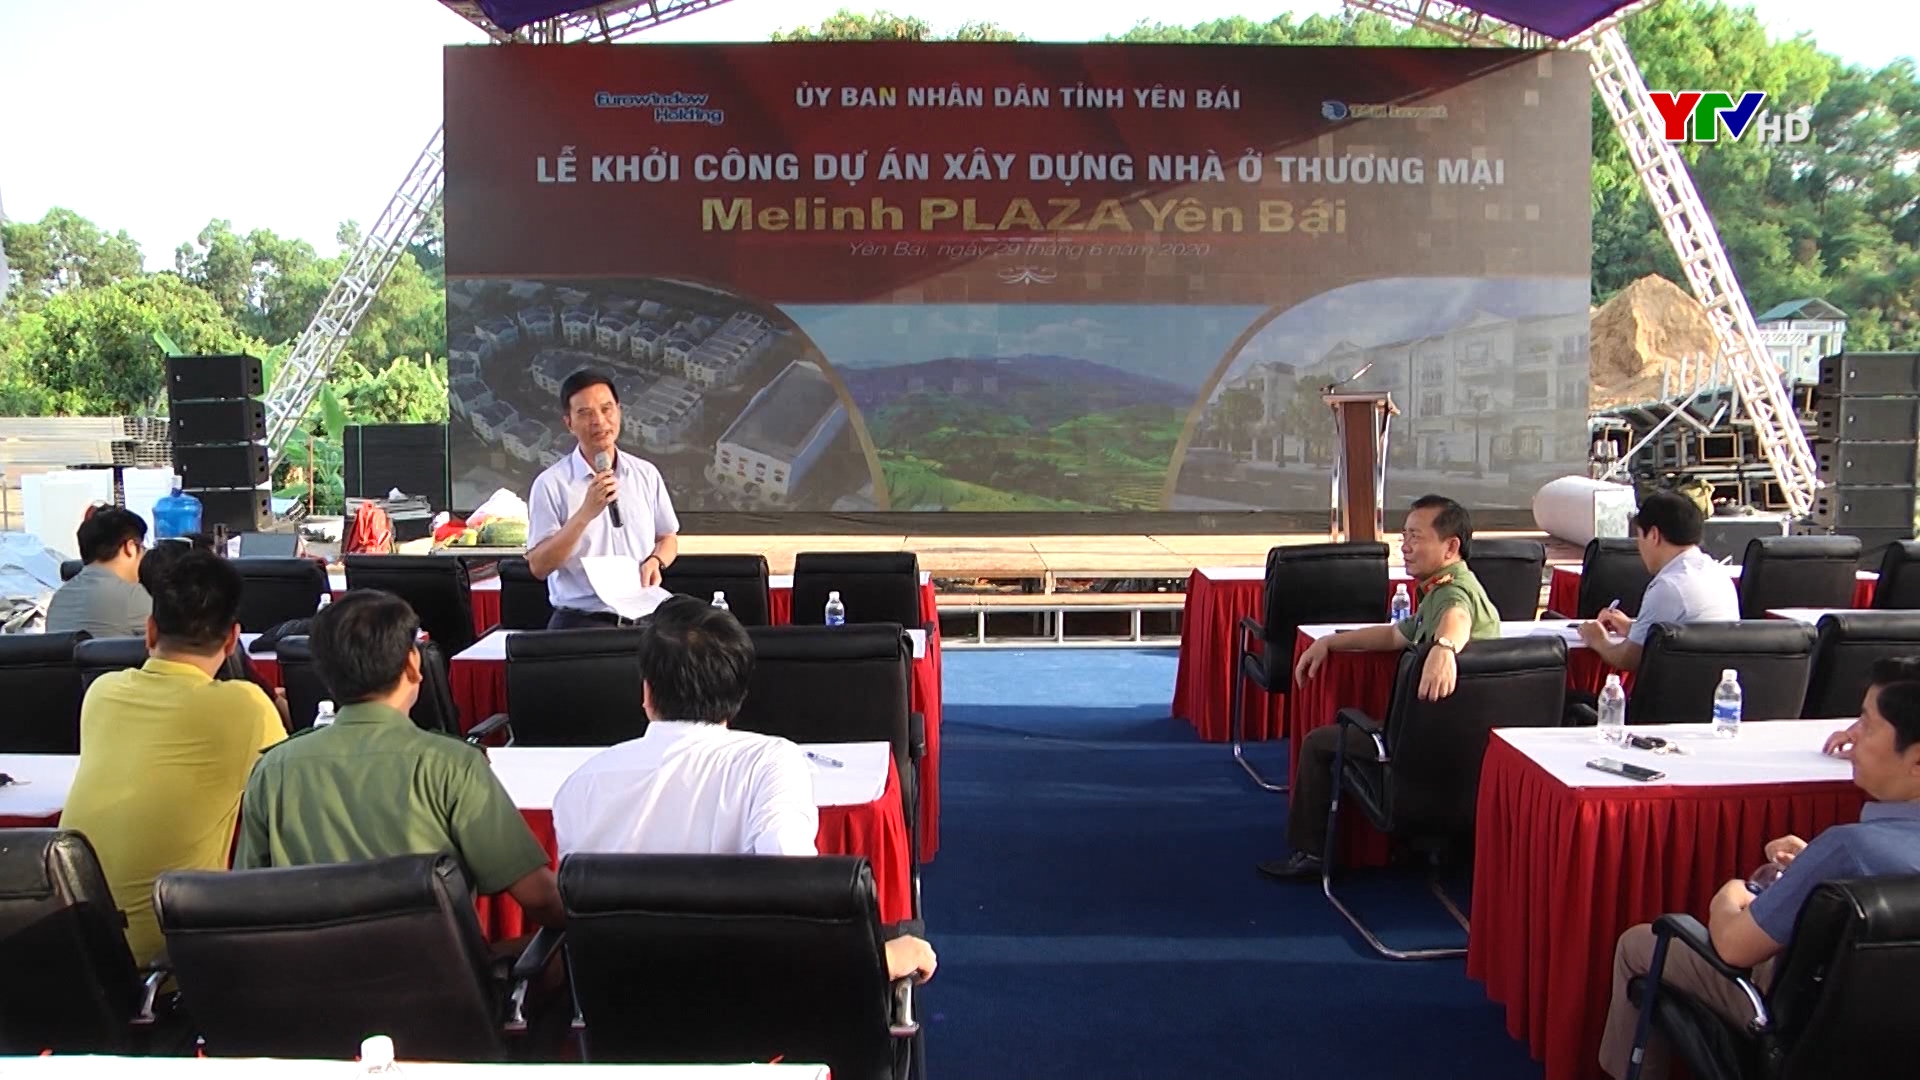 Đồng chí Phó Chủ tịch UBND tỉnh Dương Văn Tiến kiểm tra công tác chuẩn bị Lễ khởi công dự án xây dựng nhà ở thương mại Melinh Plaza Yên Bái